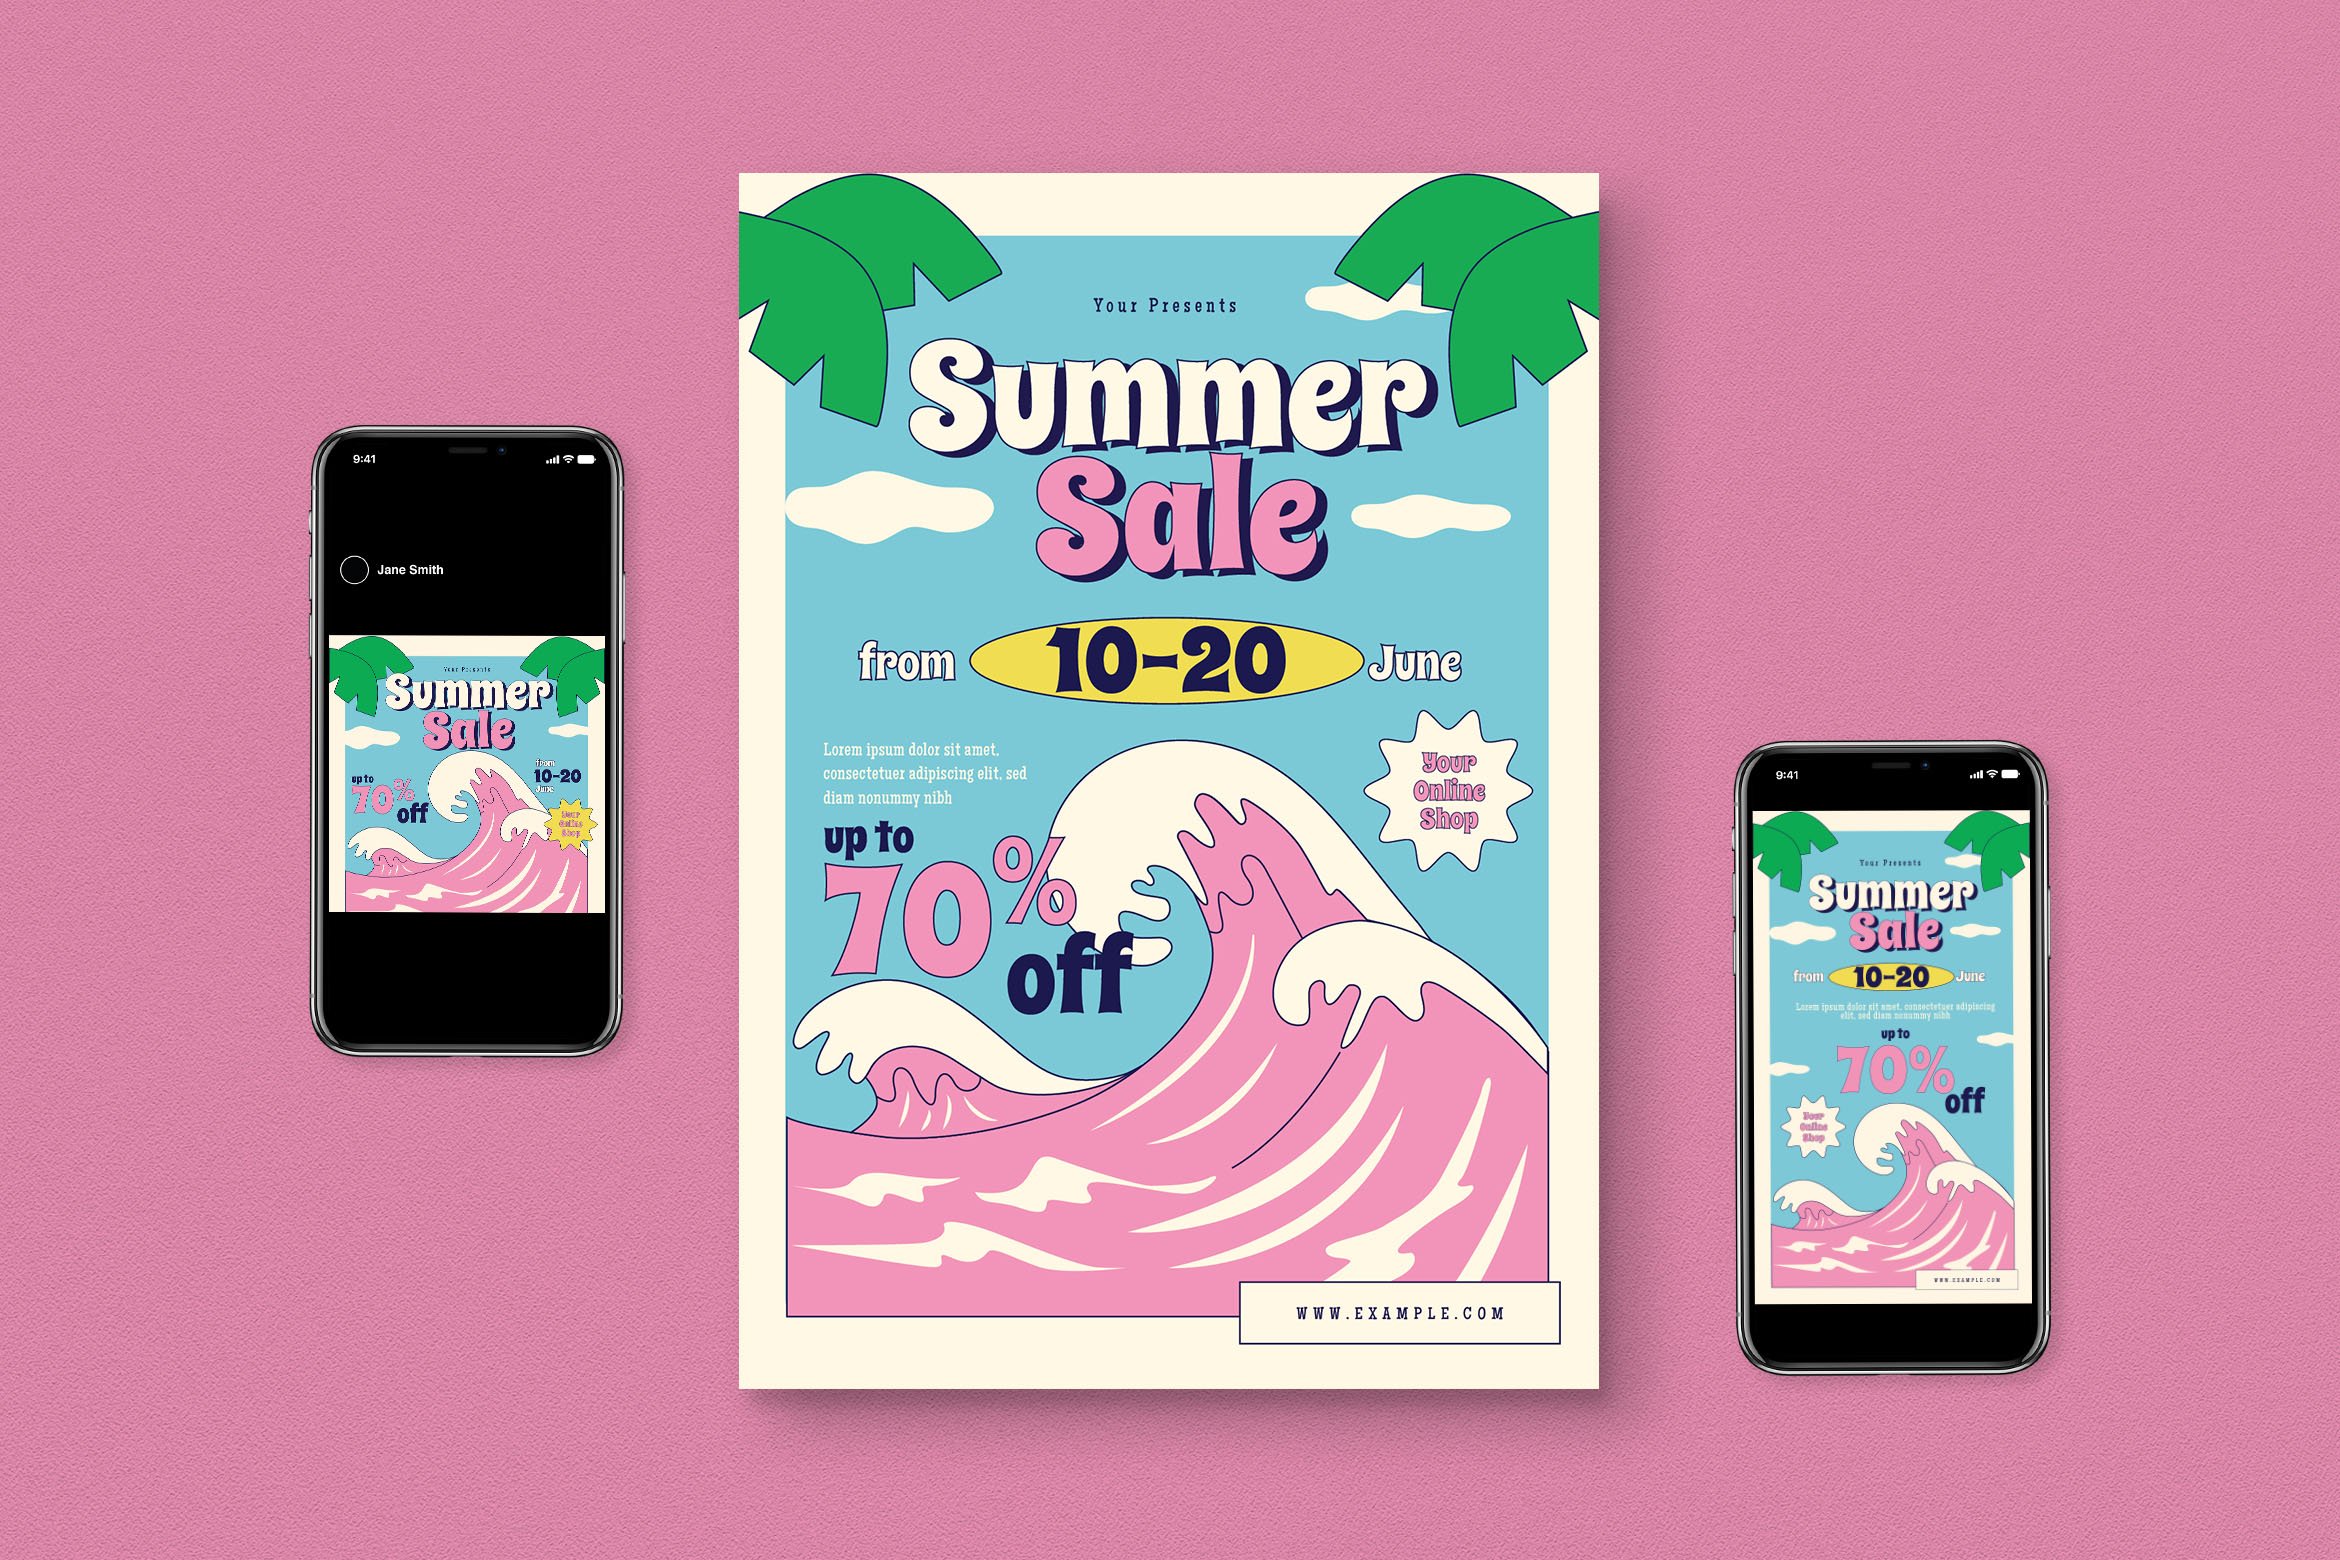 Summer Sale Flyer Set cover image.